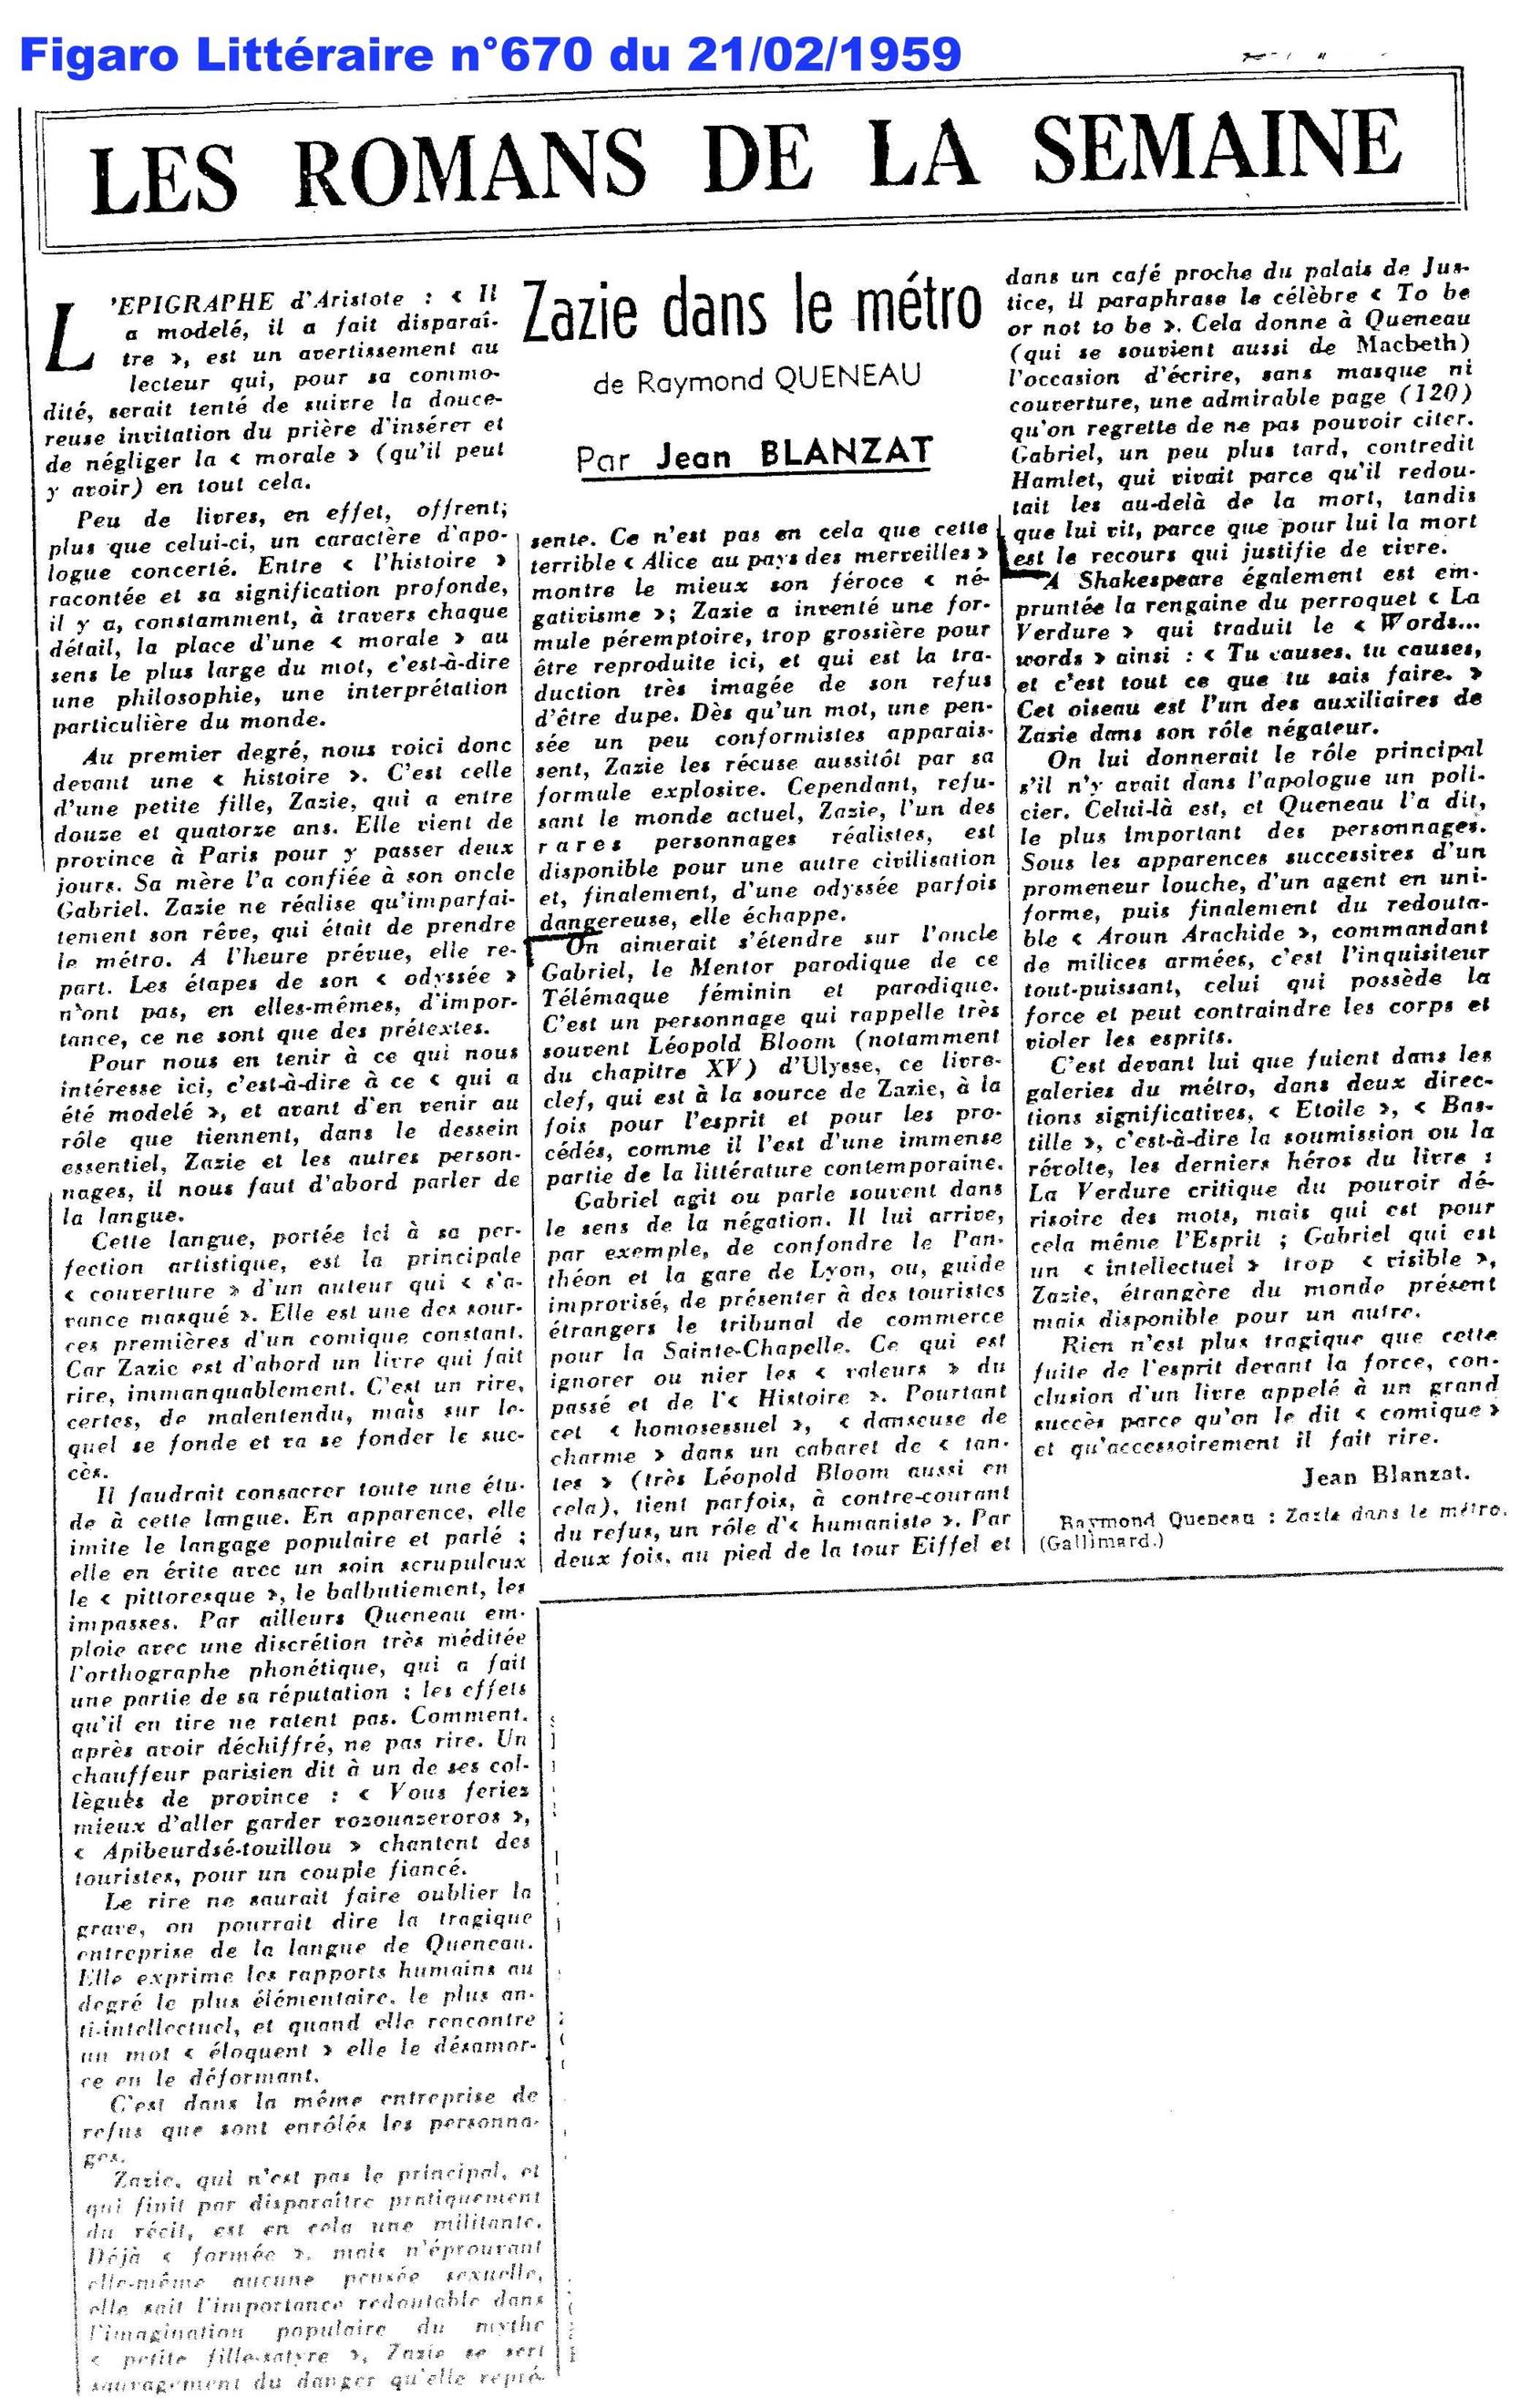 Figaro Littéraire n°670 - 21 février 1959